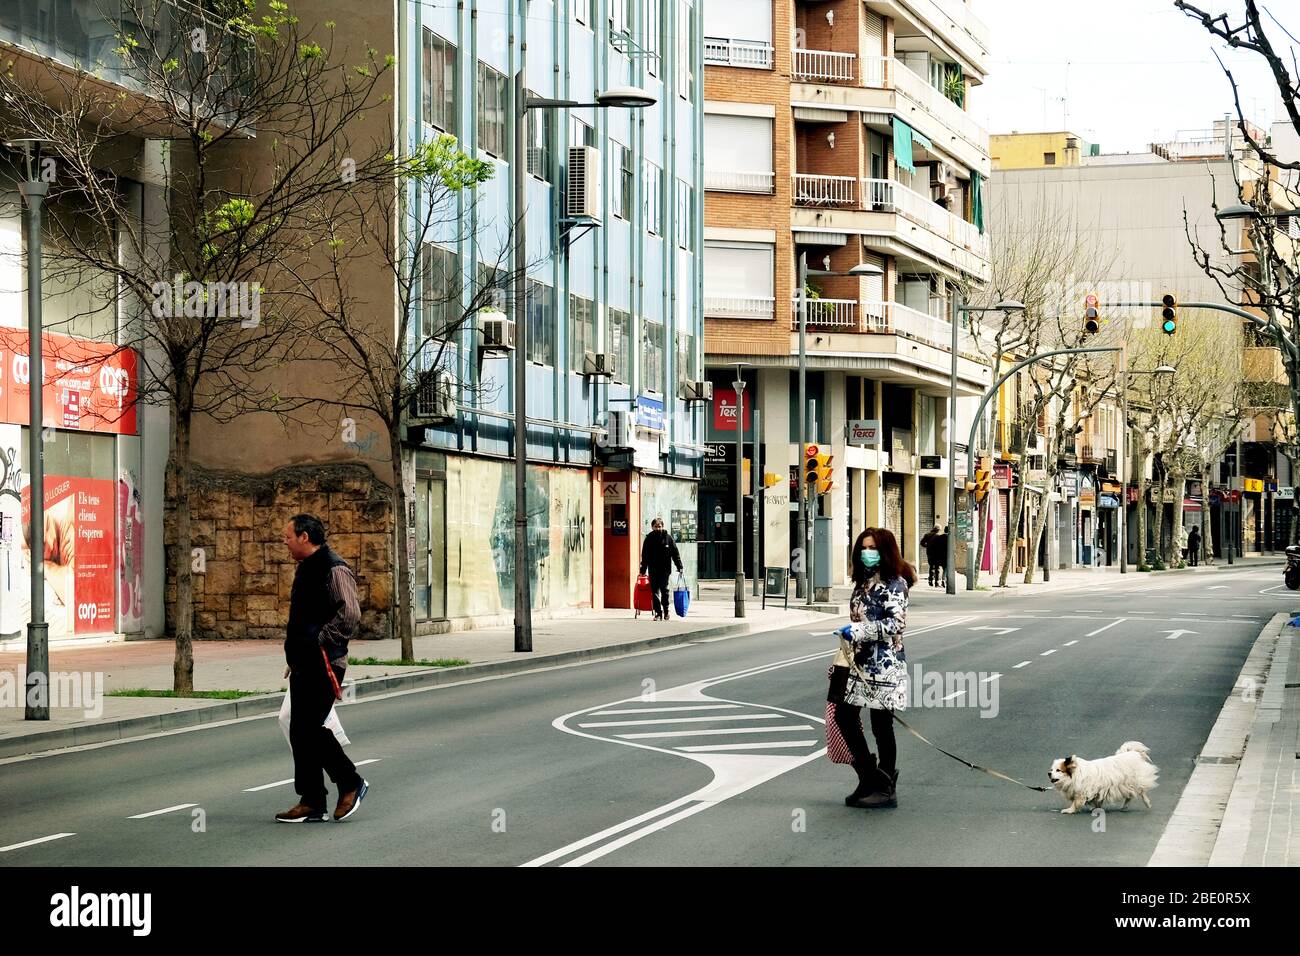 Barcelone, Espagne avril 2020: La vie quotidienne des personnes pendant l'épidémie du virus Corona. Banque D'Images